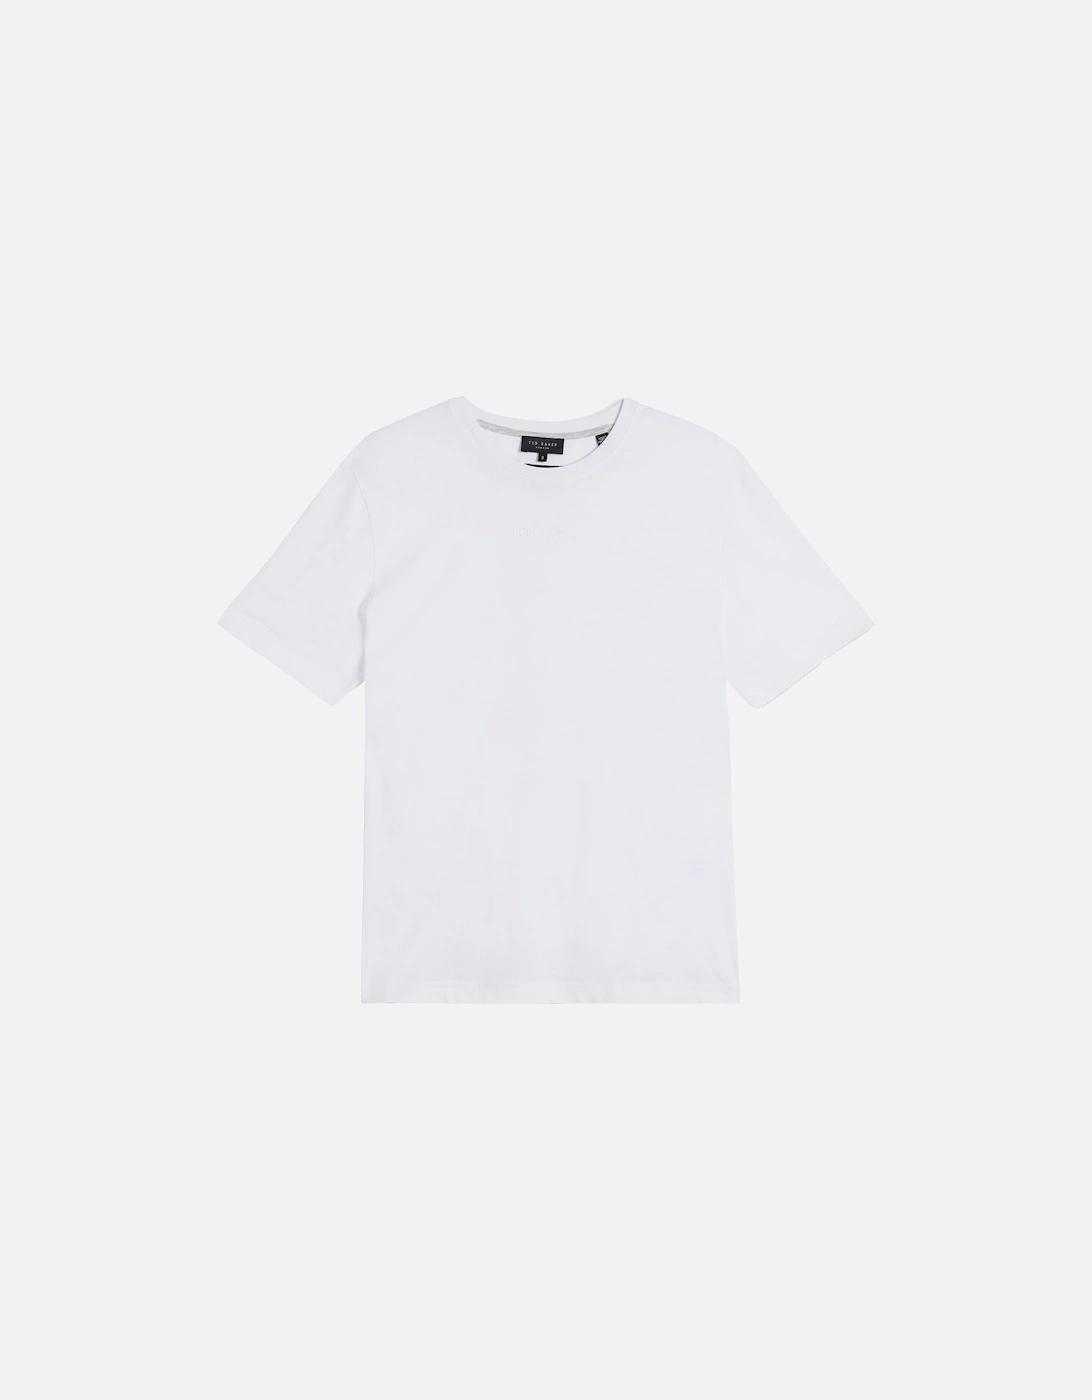 Mens Wilkin S/S Branded T-Shirt (White), 7 of 6